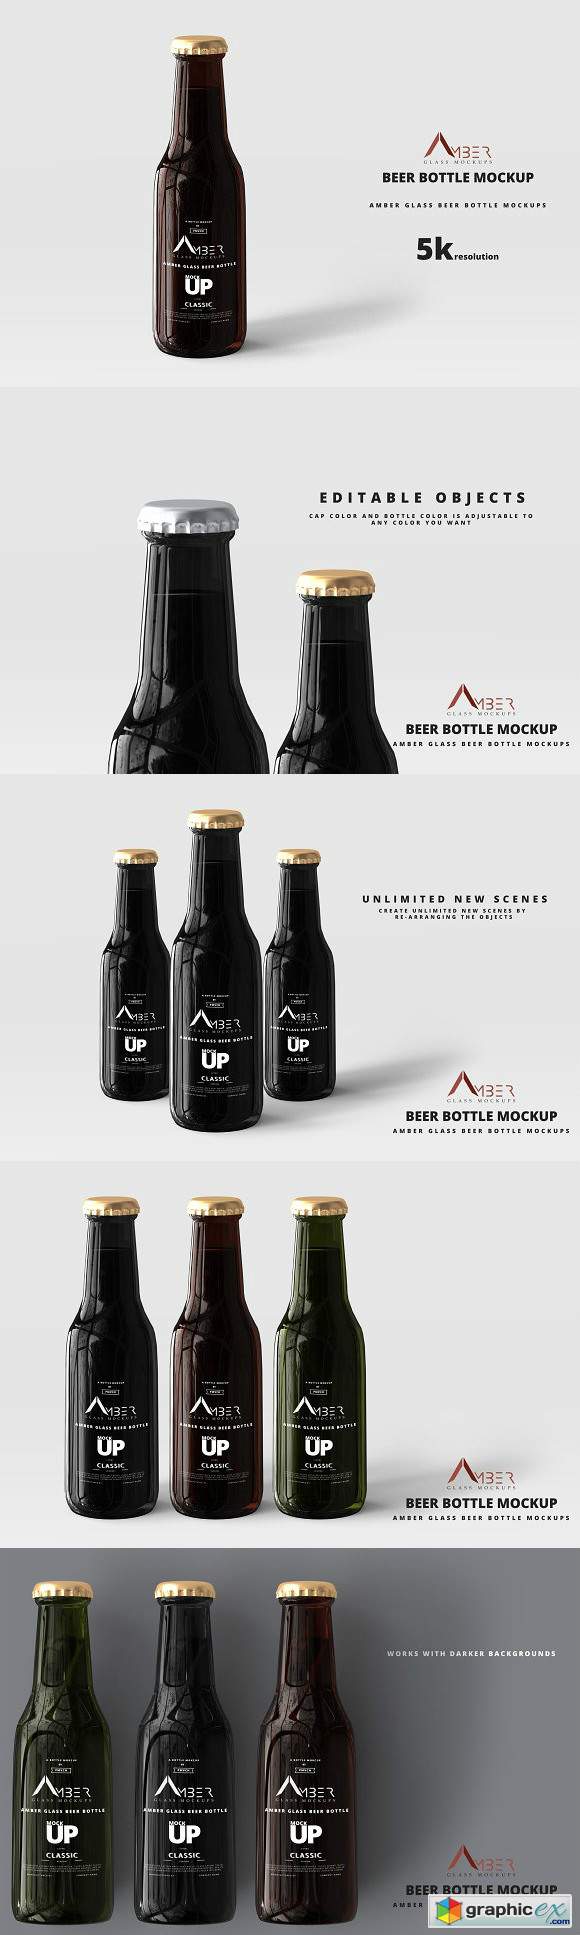 Amber Glass Beer Bottle Mockup 04